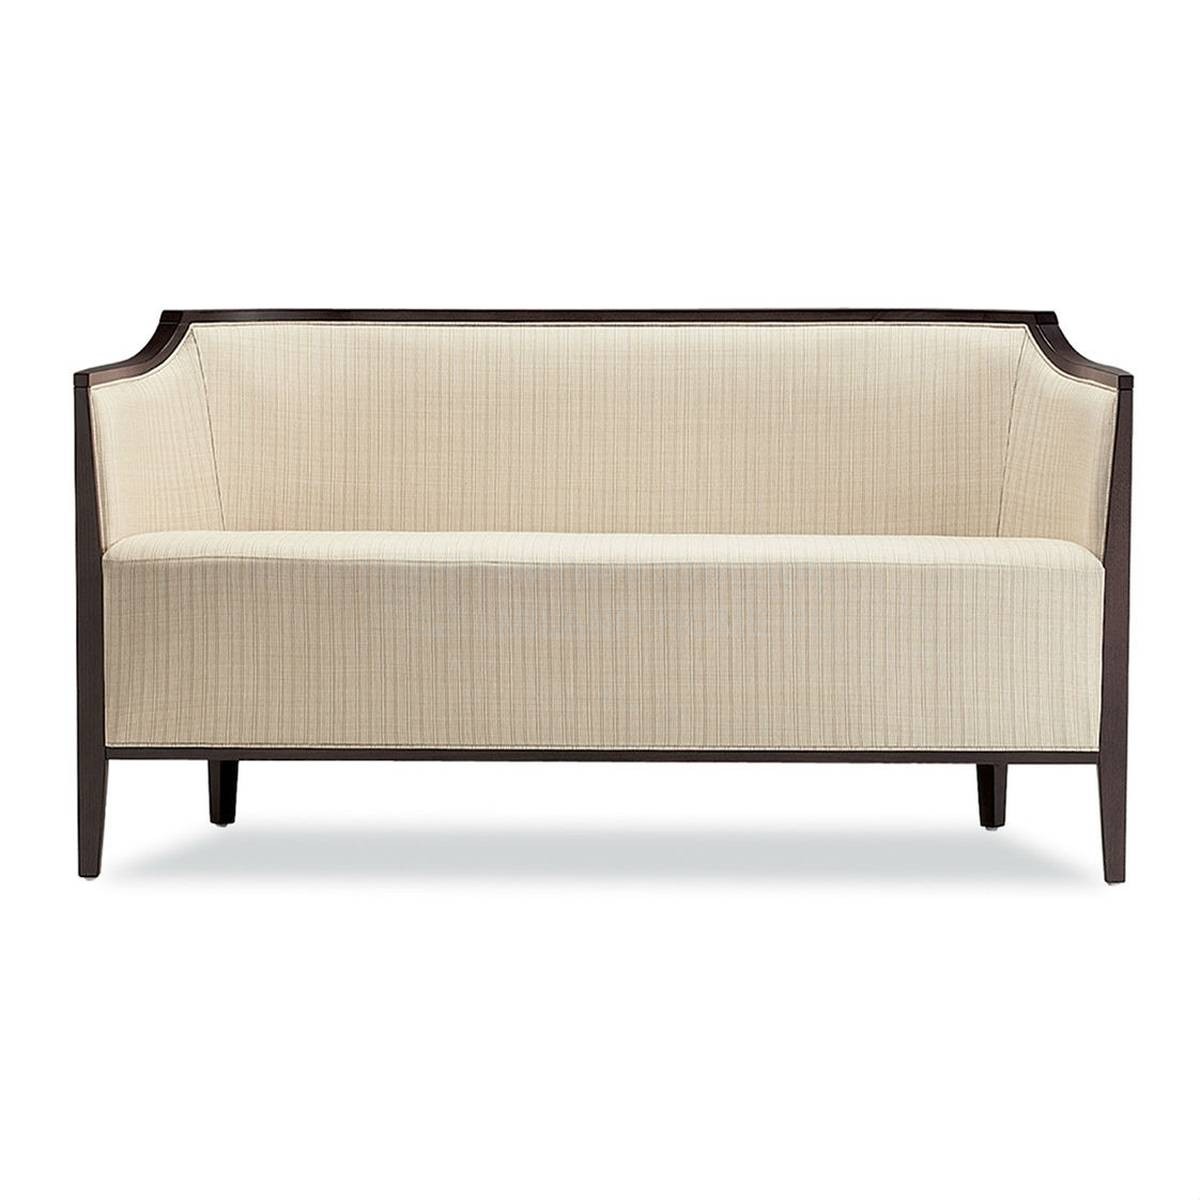 Прямой диван Villa sofa из Италии фабрики TONON